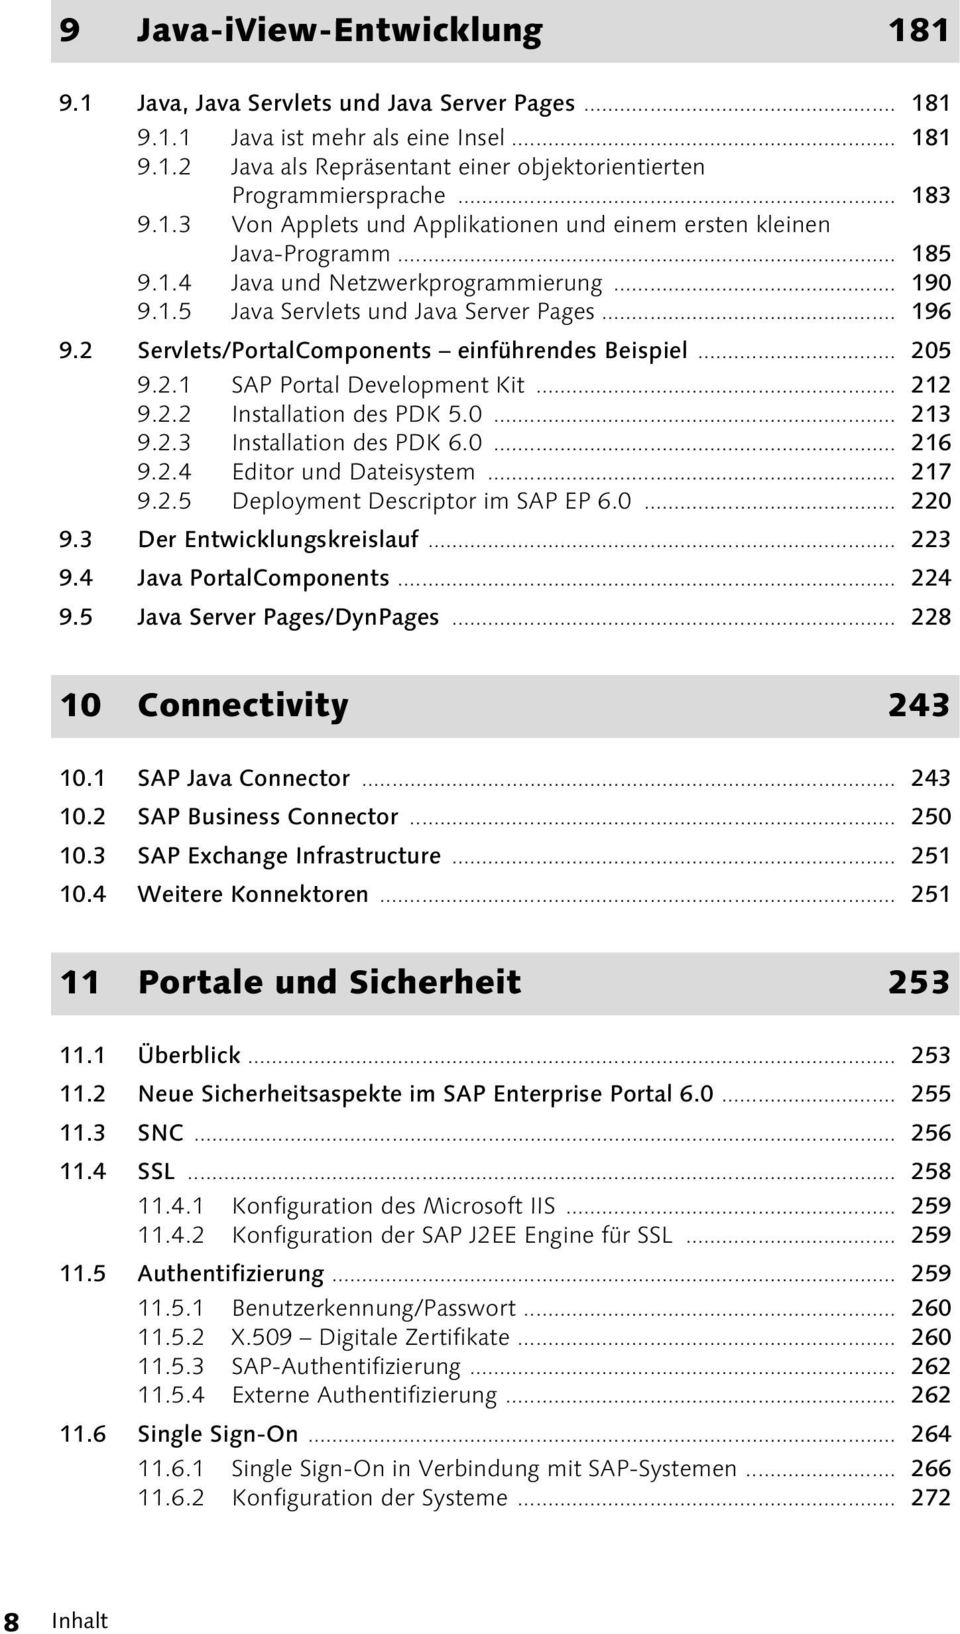 2 Servlets/PortalComponents einführendes Beispiel... 205 9.2.1 SAP Portal Development Kit... 212 9.2.2 Installation des PDK 5.0... 213 9.2.3 Installation des PDK 6.0... 216 9.2.4 Editor und Dateisystem.